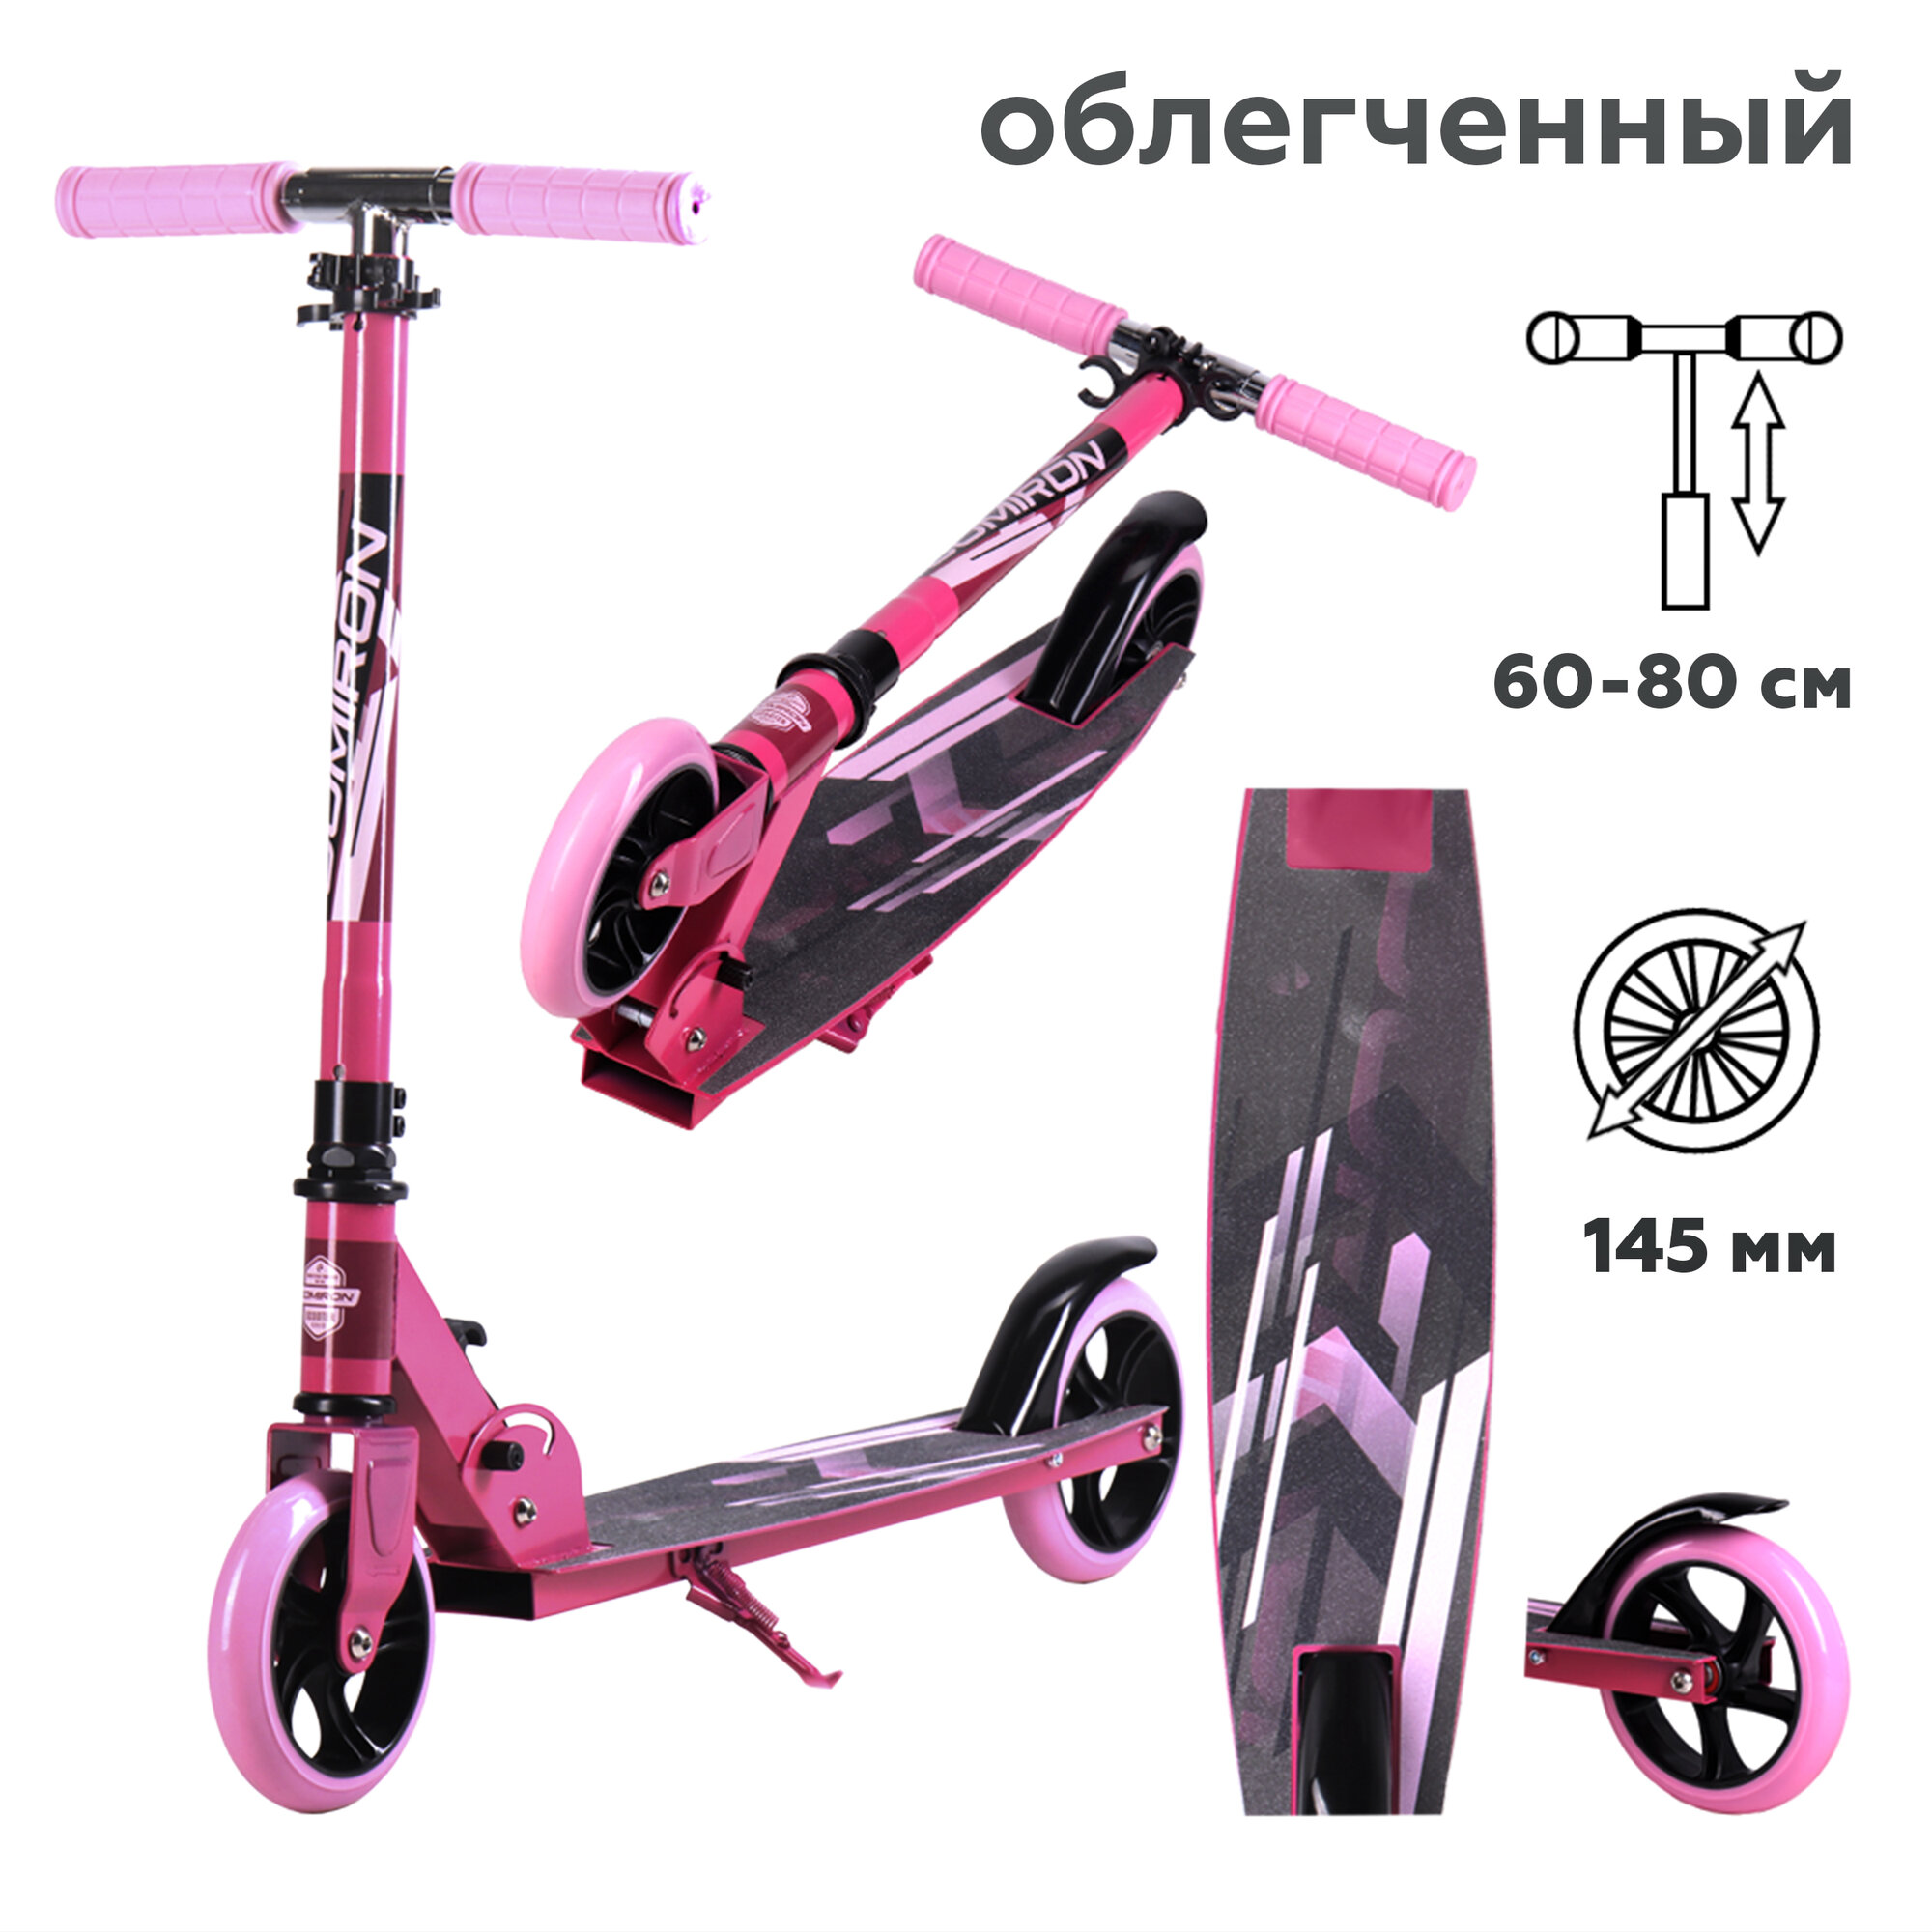 Самокат двухколесный складной для девочки для мальчика детский COMIRON, колеса PU 145 мм, дека 510х120 мм, подножка, складной механизм, цвет черный с розовым / 1 шт.